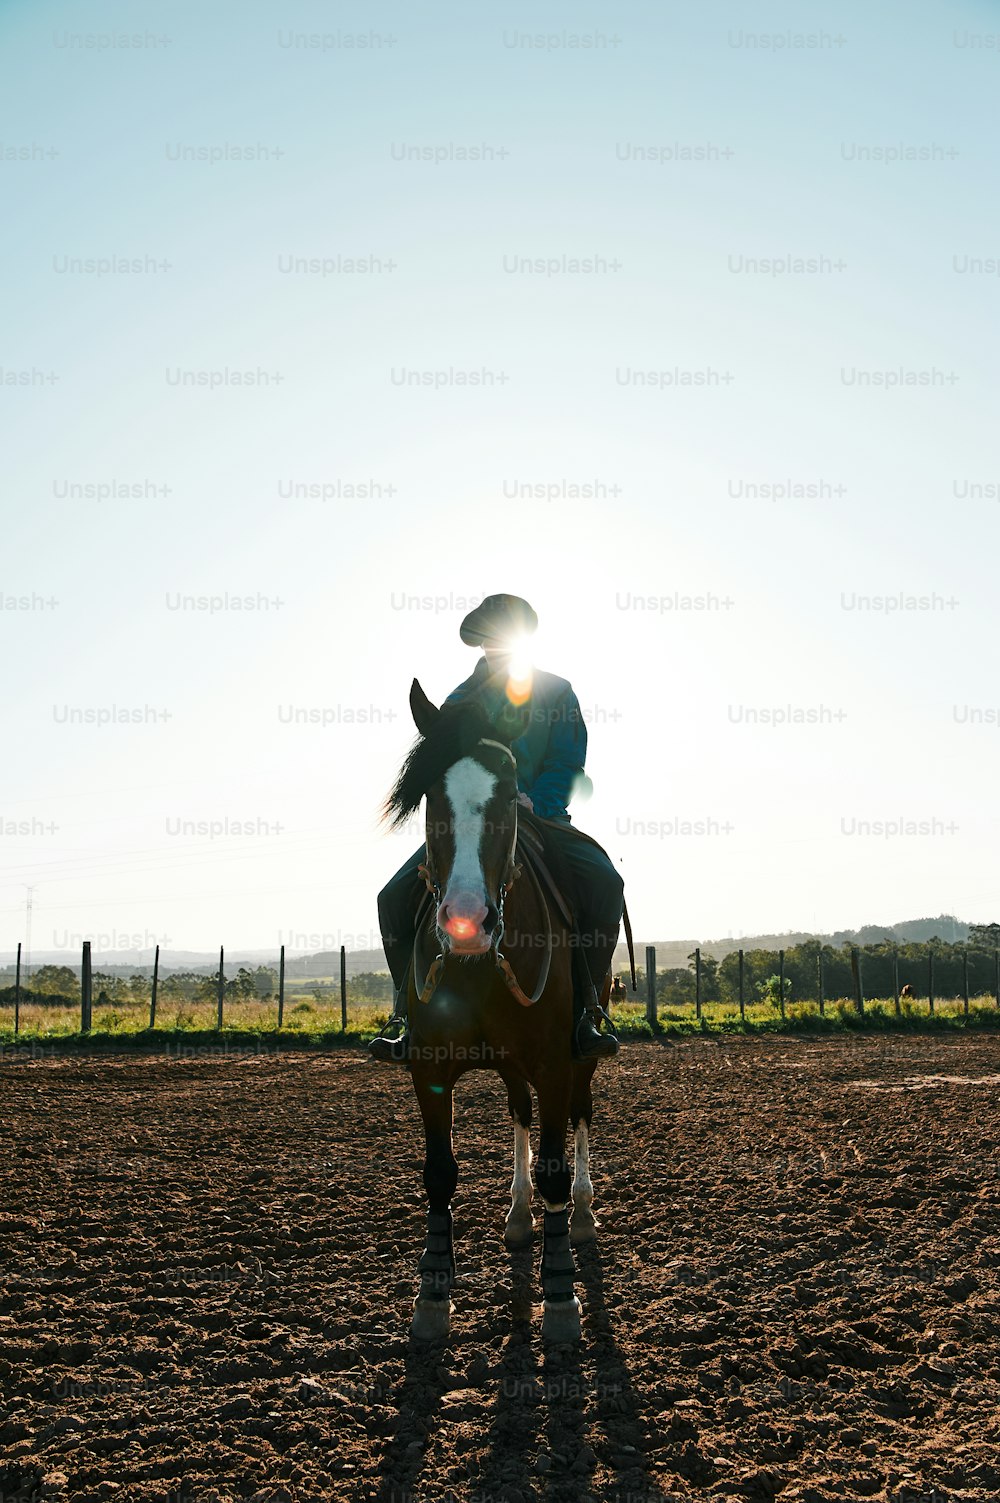 eine Person, die auf einem Pferd auf einem Feldweg reitet